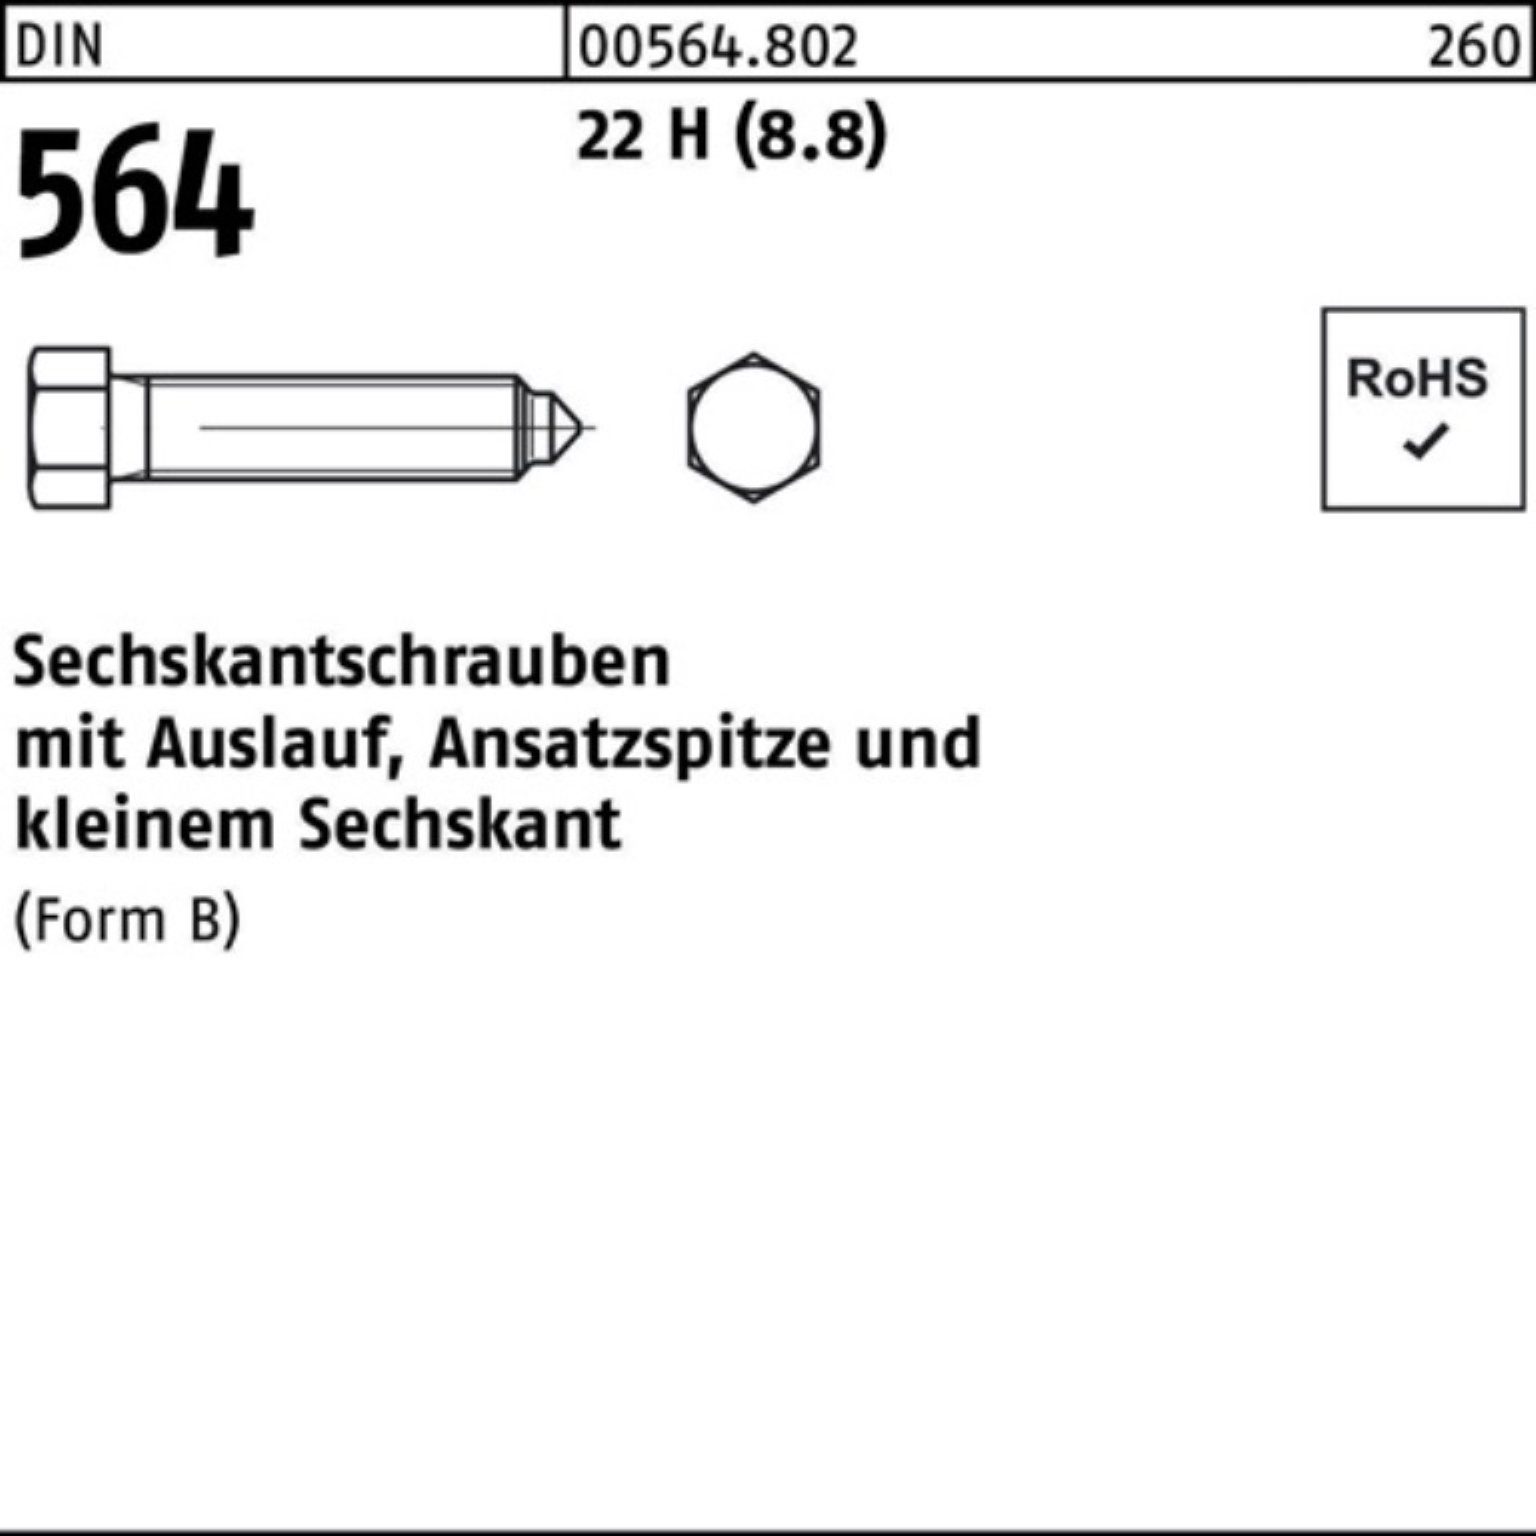 Reyher Sechskantschraube 100er Pack Sechskantschraube DIN 564 Ansatzspitze/Auslauf BM 12x 45 22